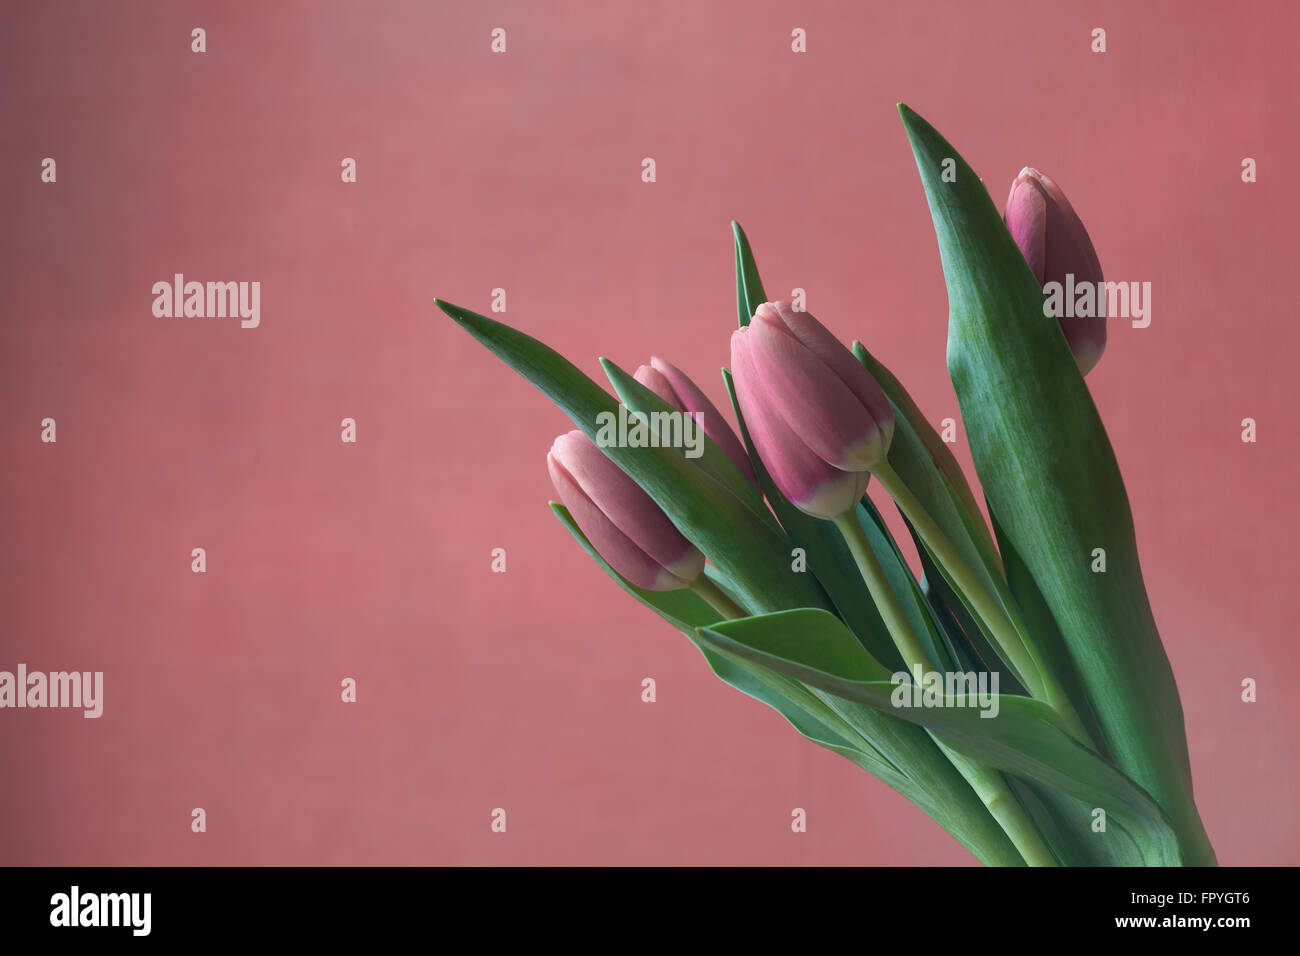 Tarjeta de felicitación de tulipanes rojos estilizado Foto de stock